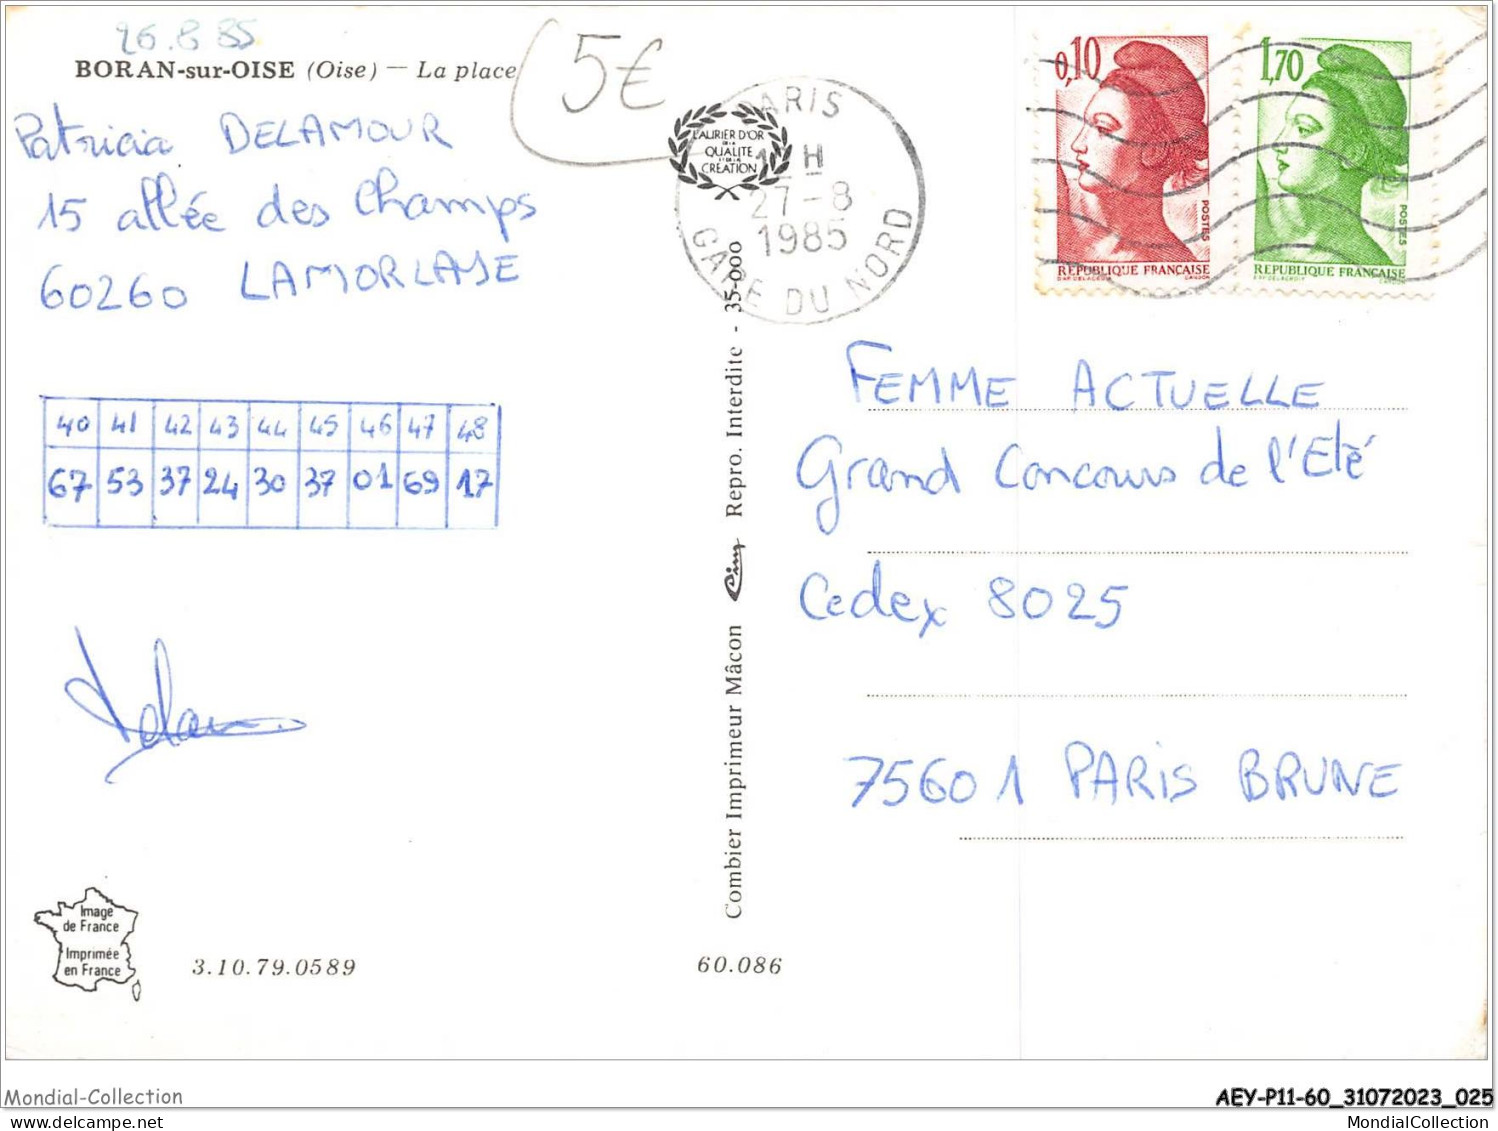 AEYP11-60-0910 - BORAN-SUR-OISE - La Place  - Boran-sur-Oise